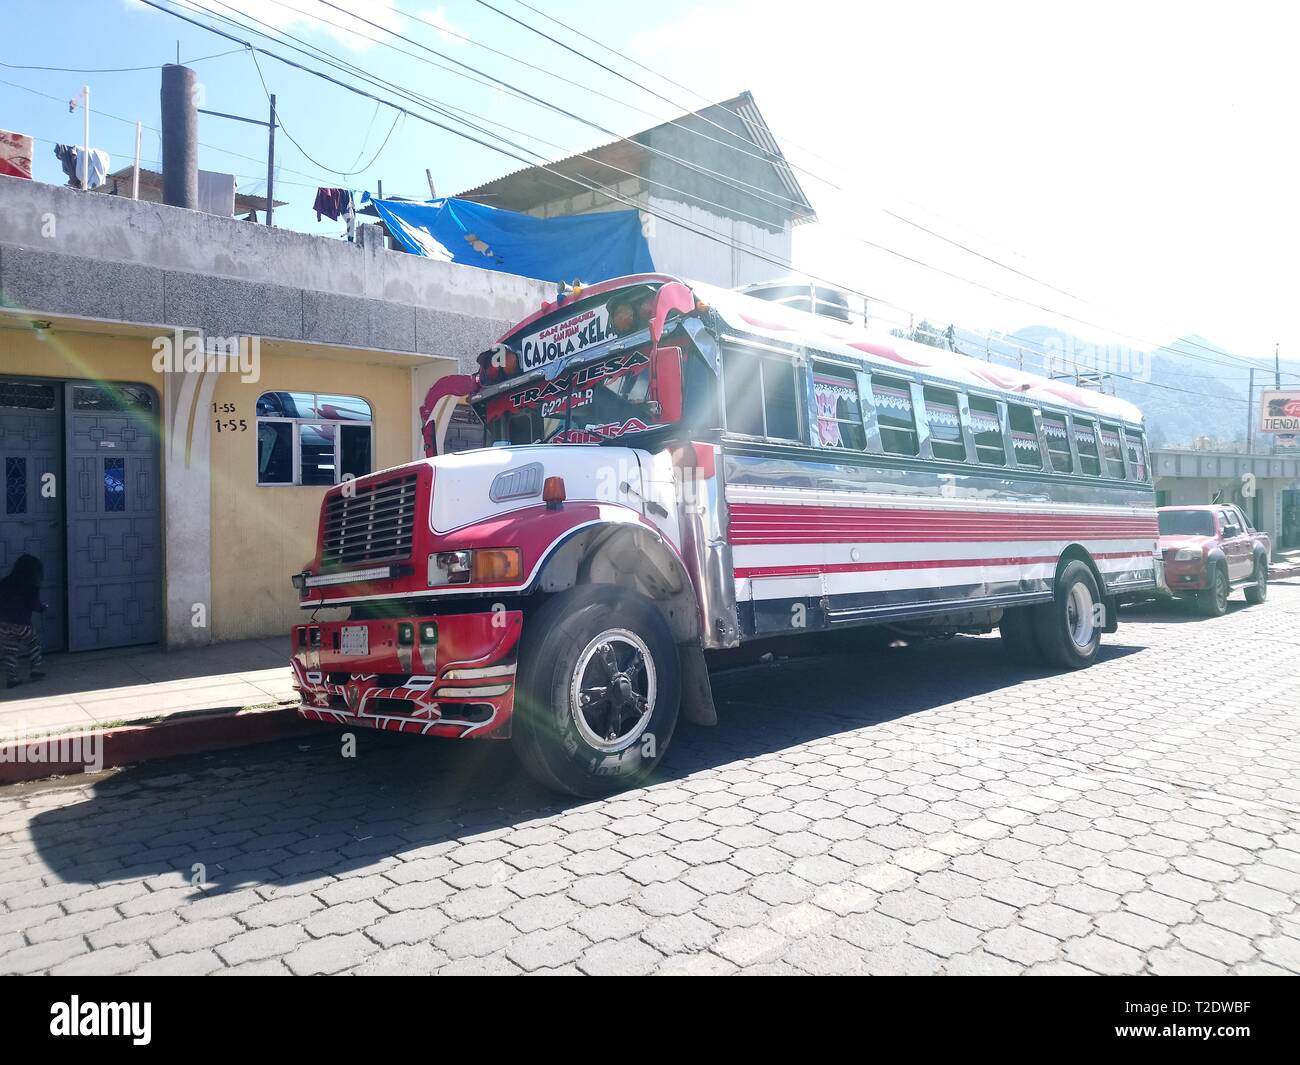 Transporte Público de Transporte parilla autobus unicas en guatemala camioneta ruta un cajola un la ciudad del quetzal de los latos xela, bus del Guatemala Foto Stock